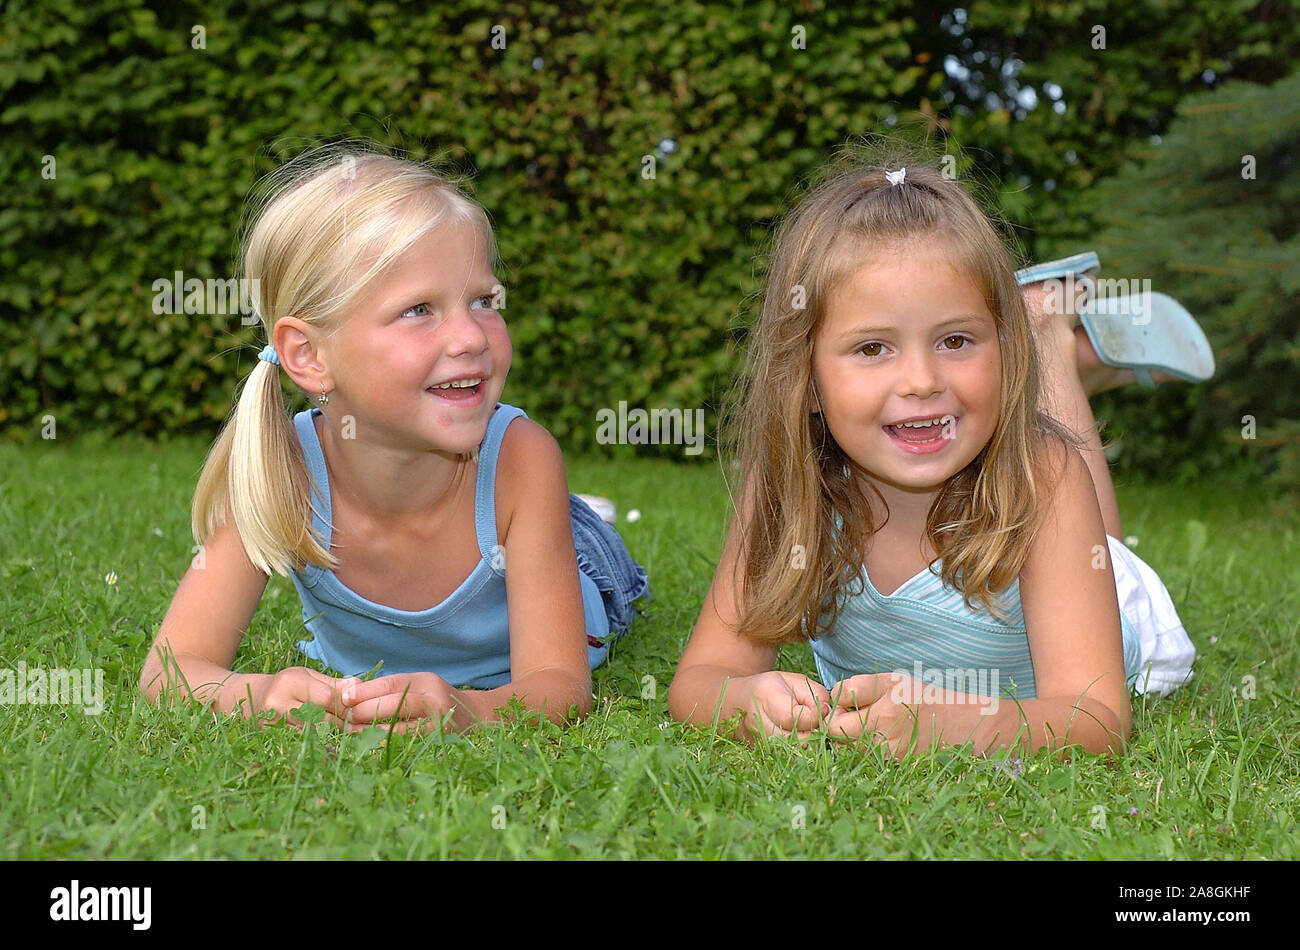 Zwei lachende Kinder liegen im Park auf einer Wiese, Mädchen, 6 Jahre, signor: Sì Foto Stock